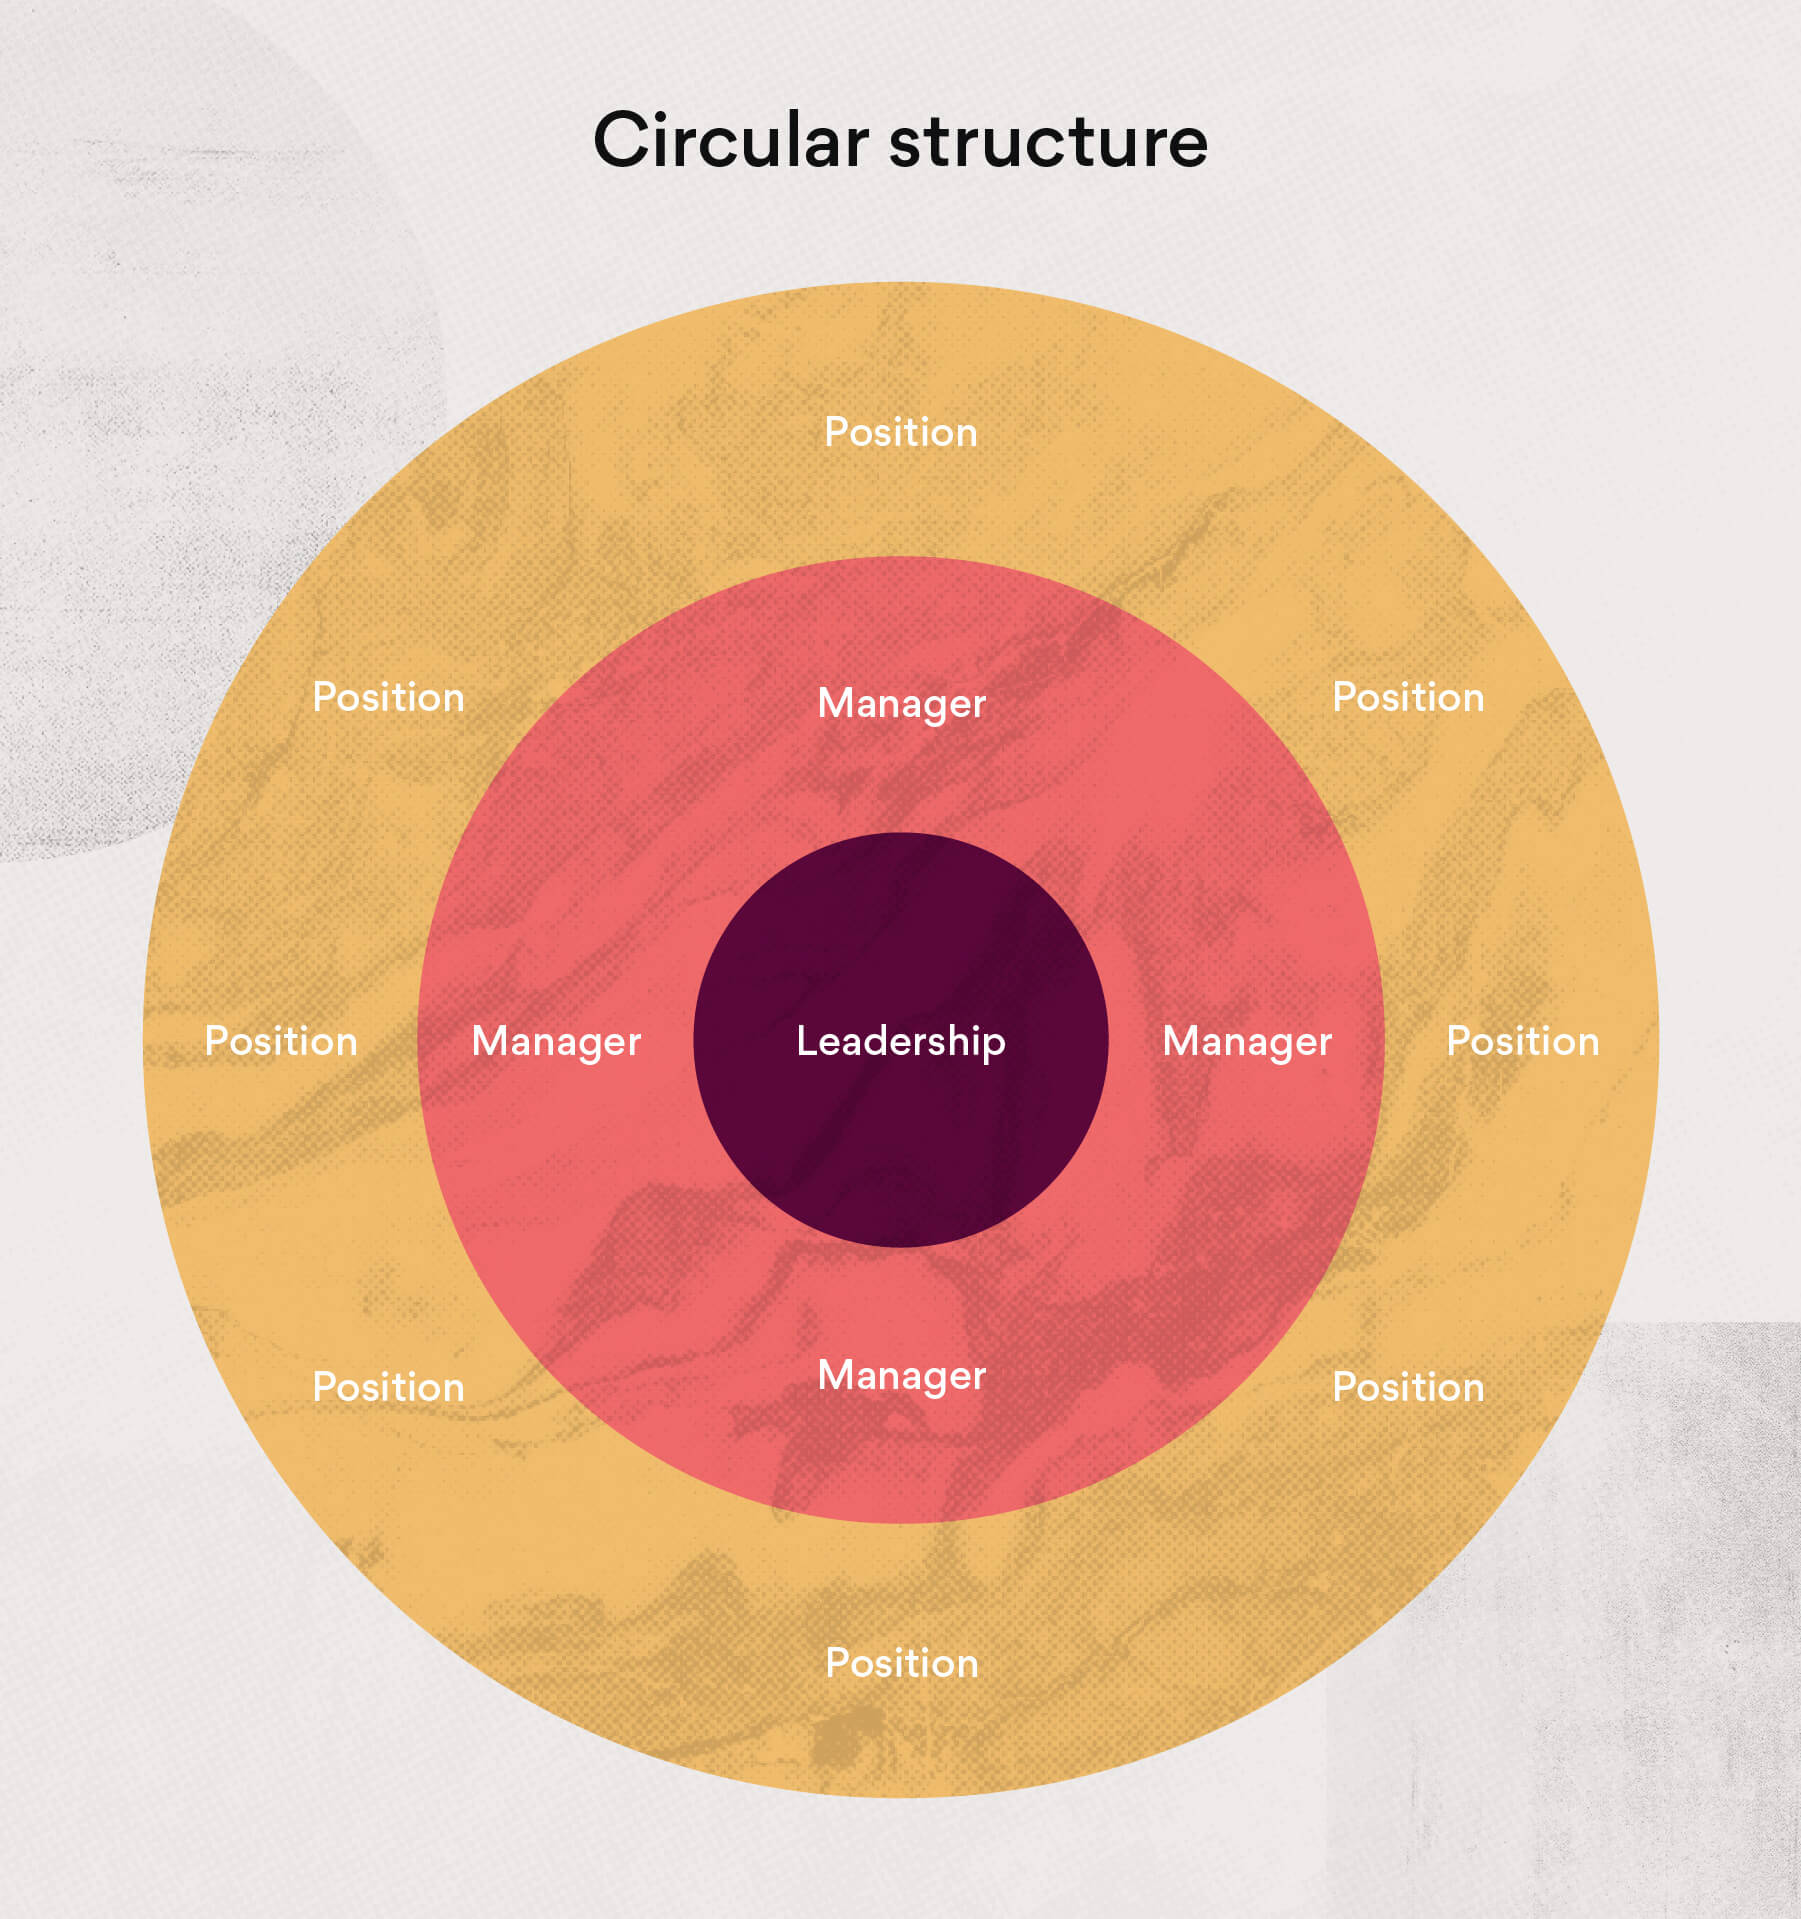 Circular structure